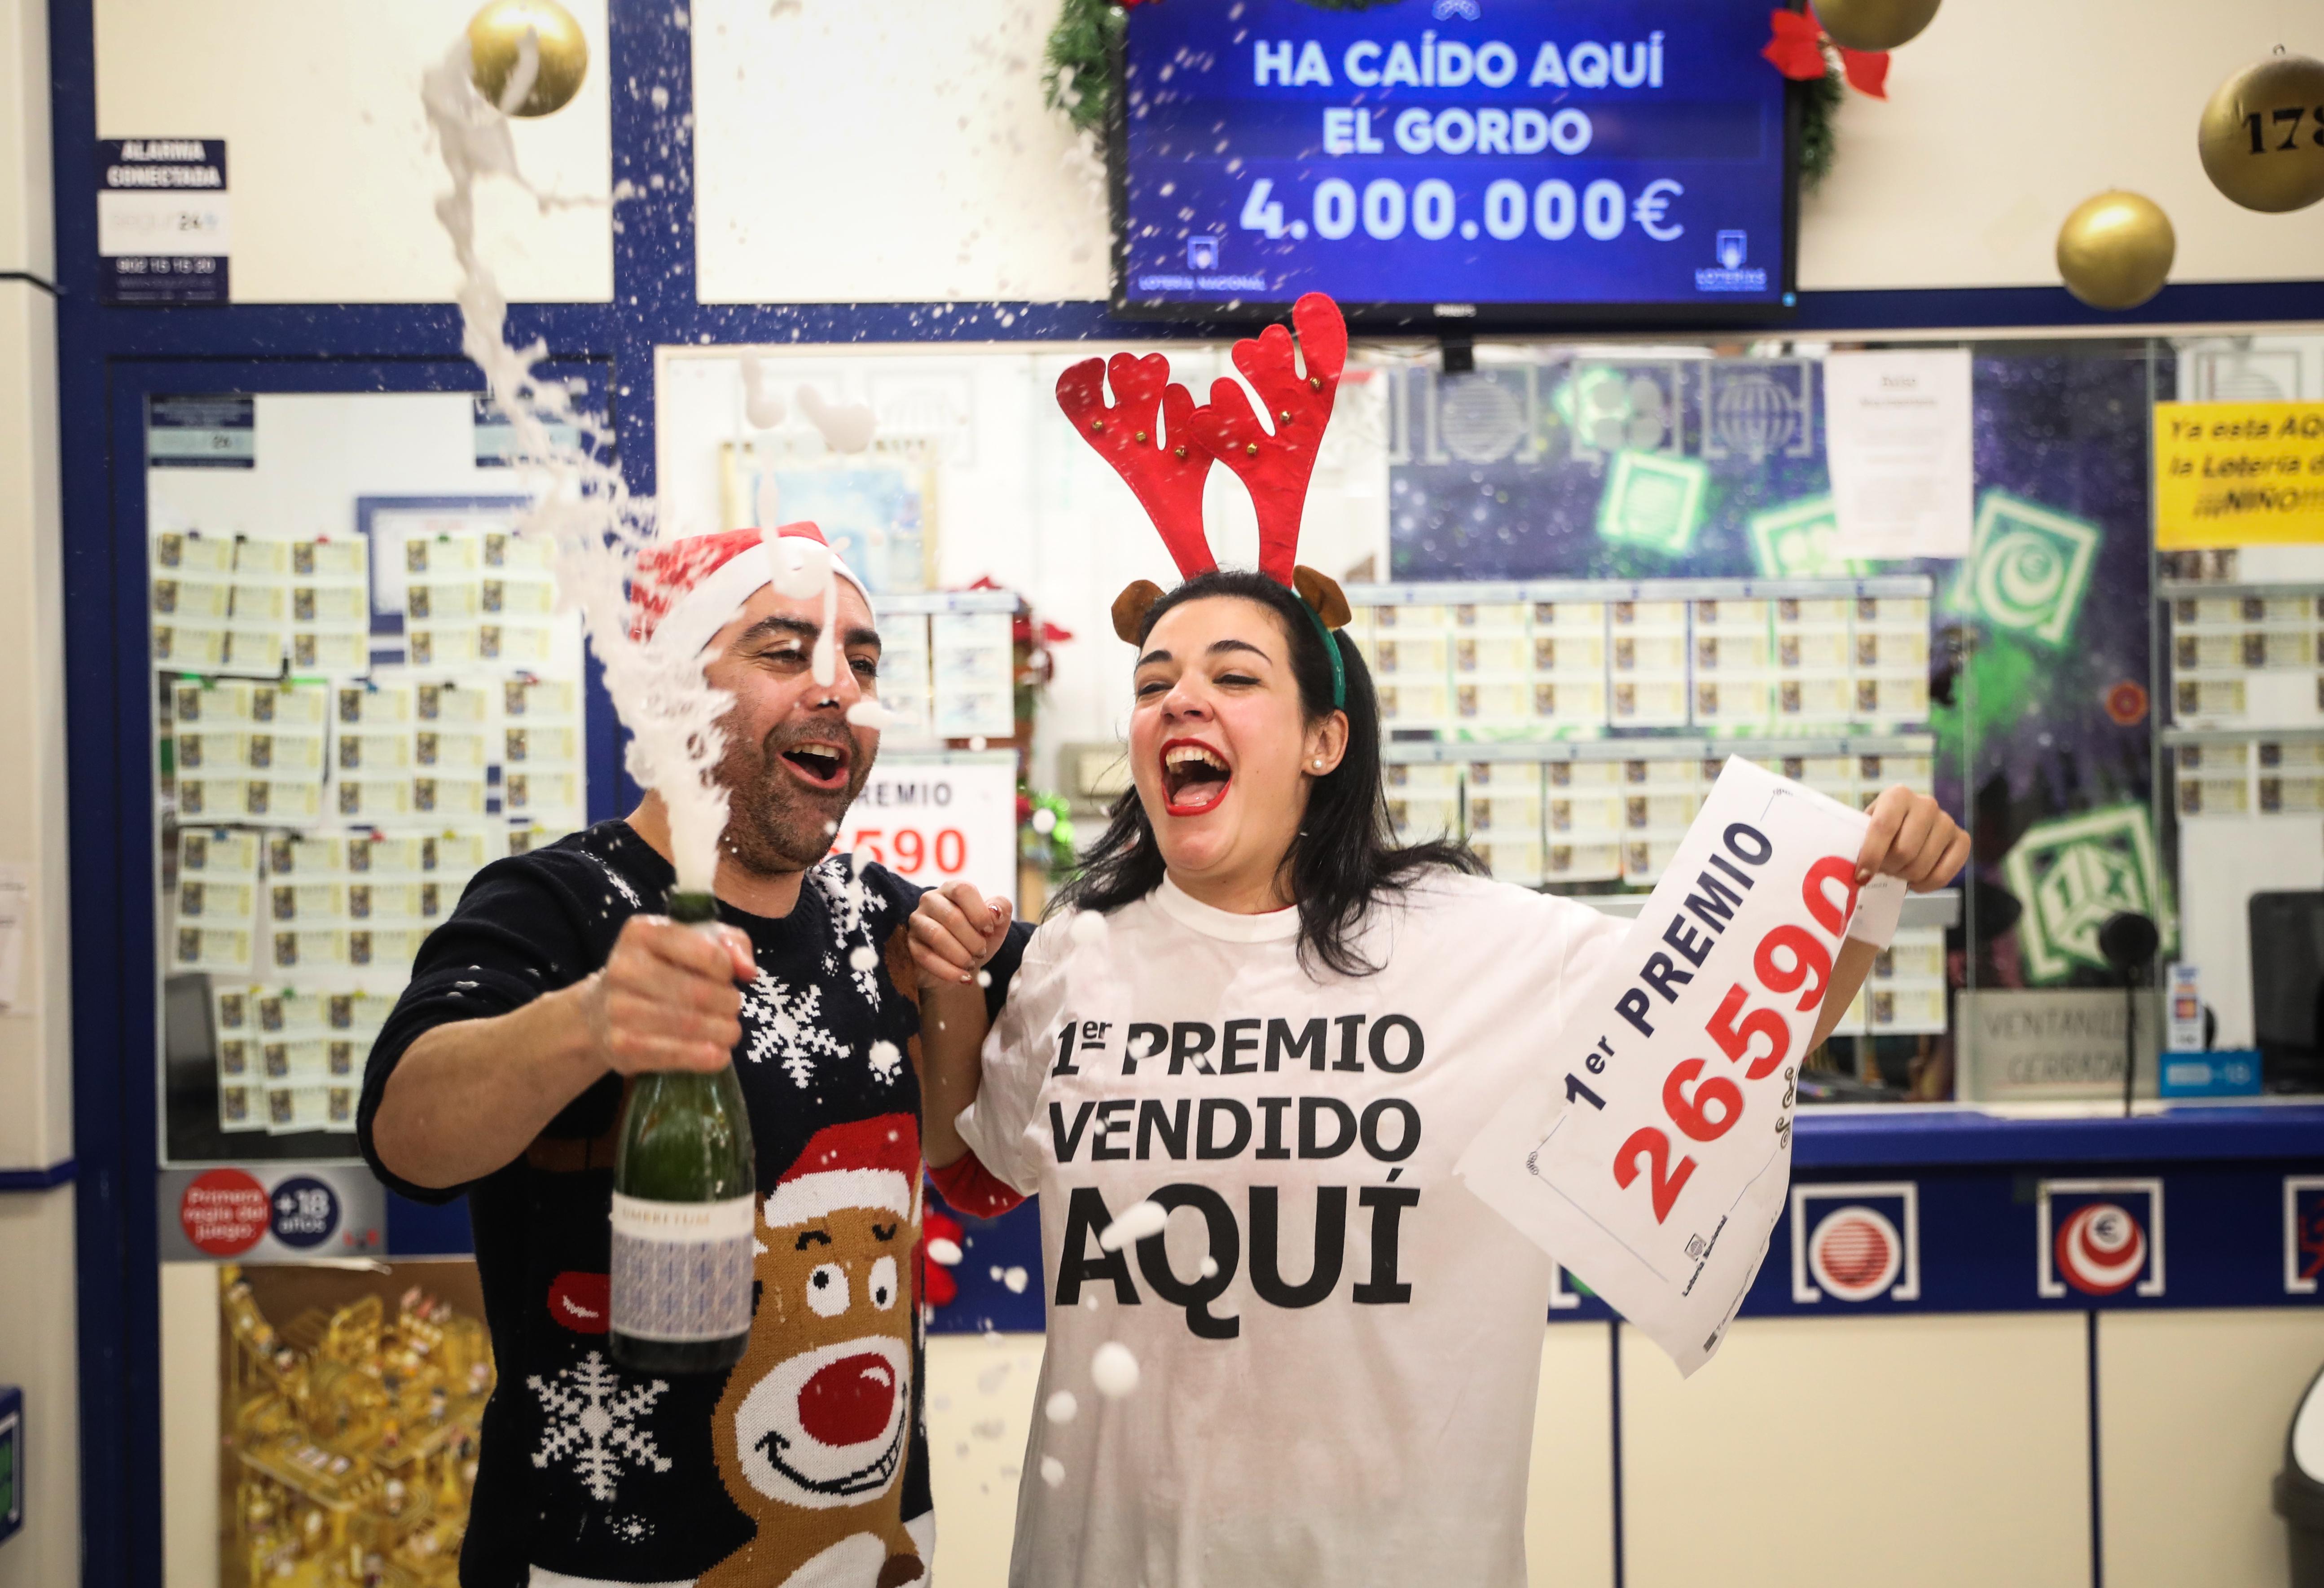 Loteria Navidad 2019 Una serie de el  Gordo” cae en Sevilla El lotero José María Nogales de la administración nº 94 de lotería junto a su mujer celebran repartir el primer premio de la lotería de navidad  (1)